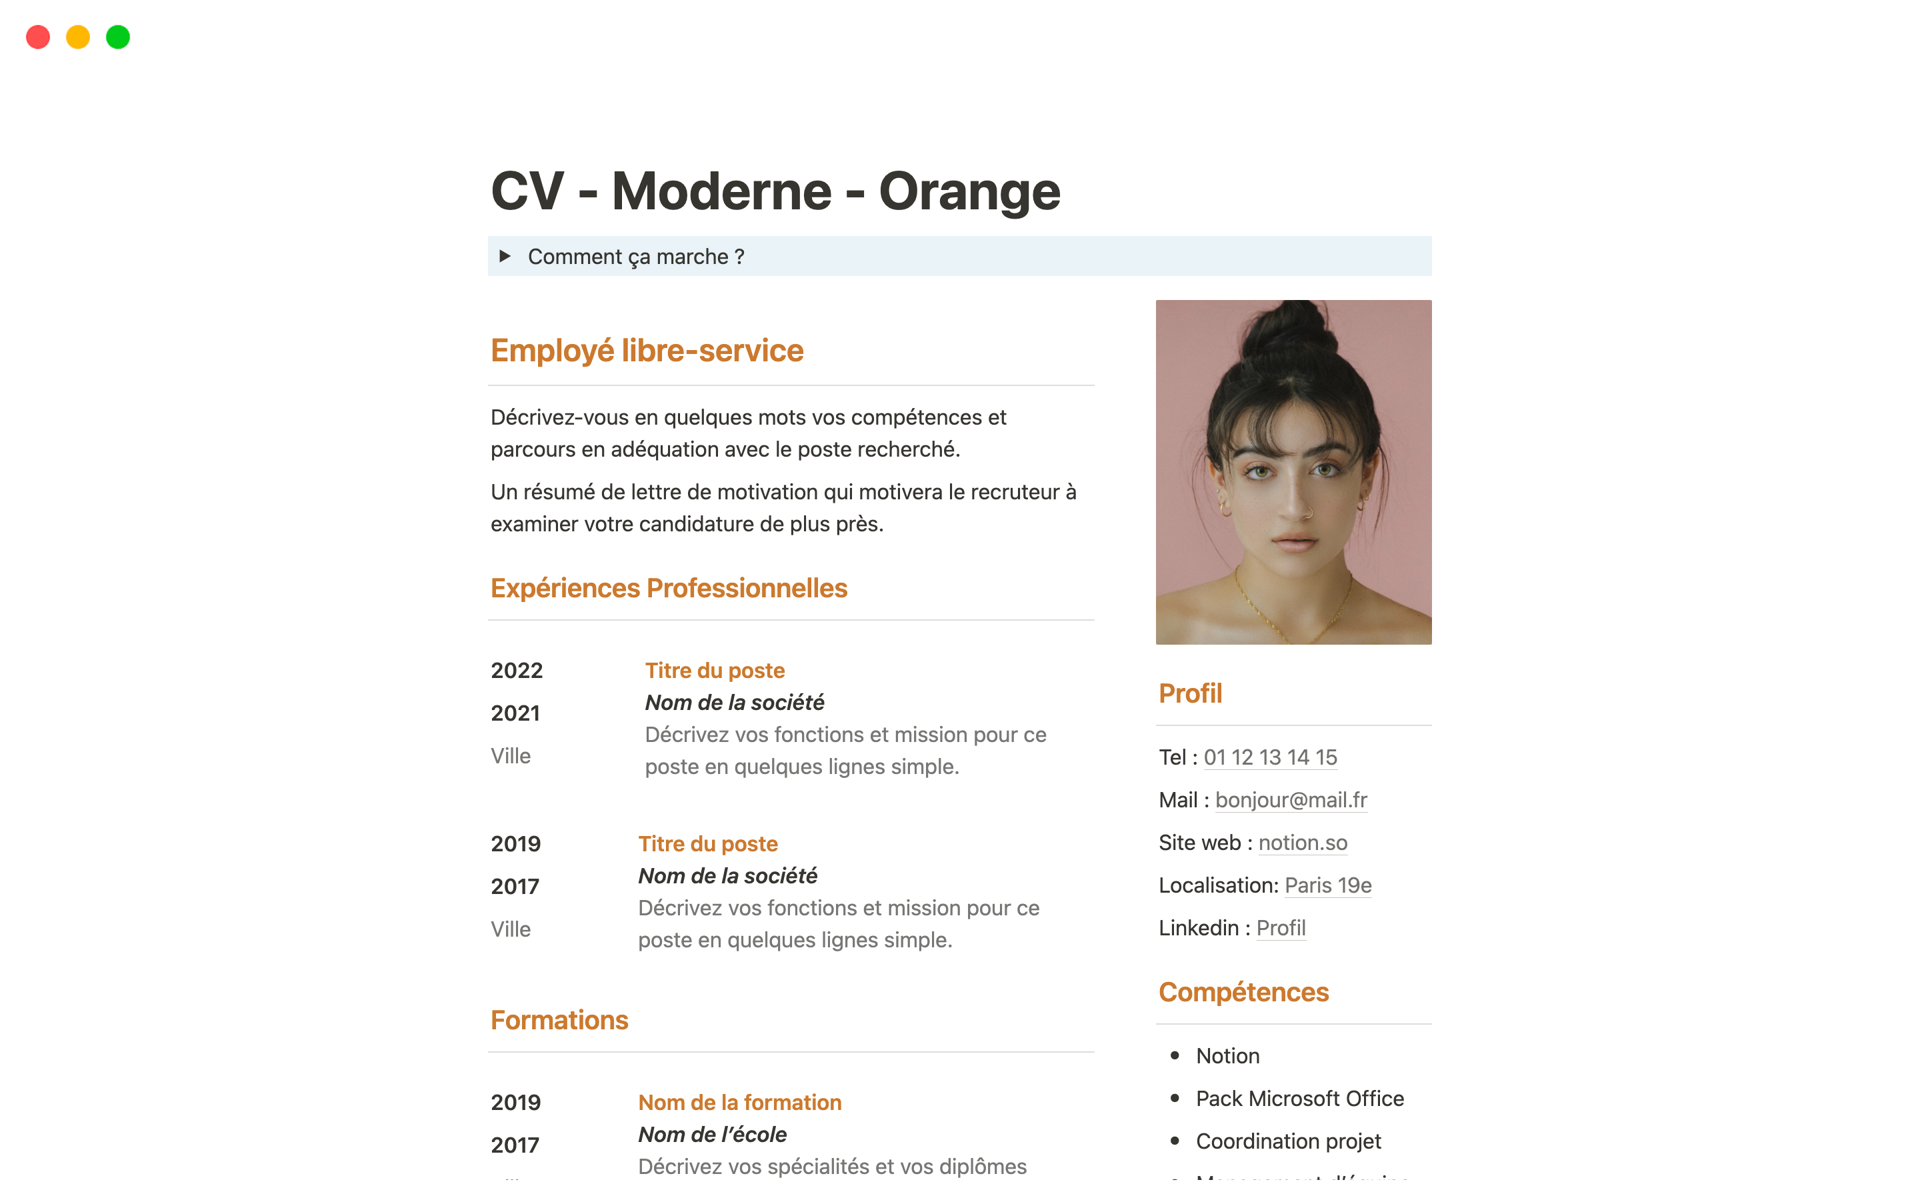 Uma prévia do modelo para CV - Moderne - Orange